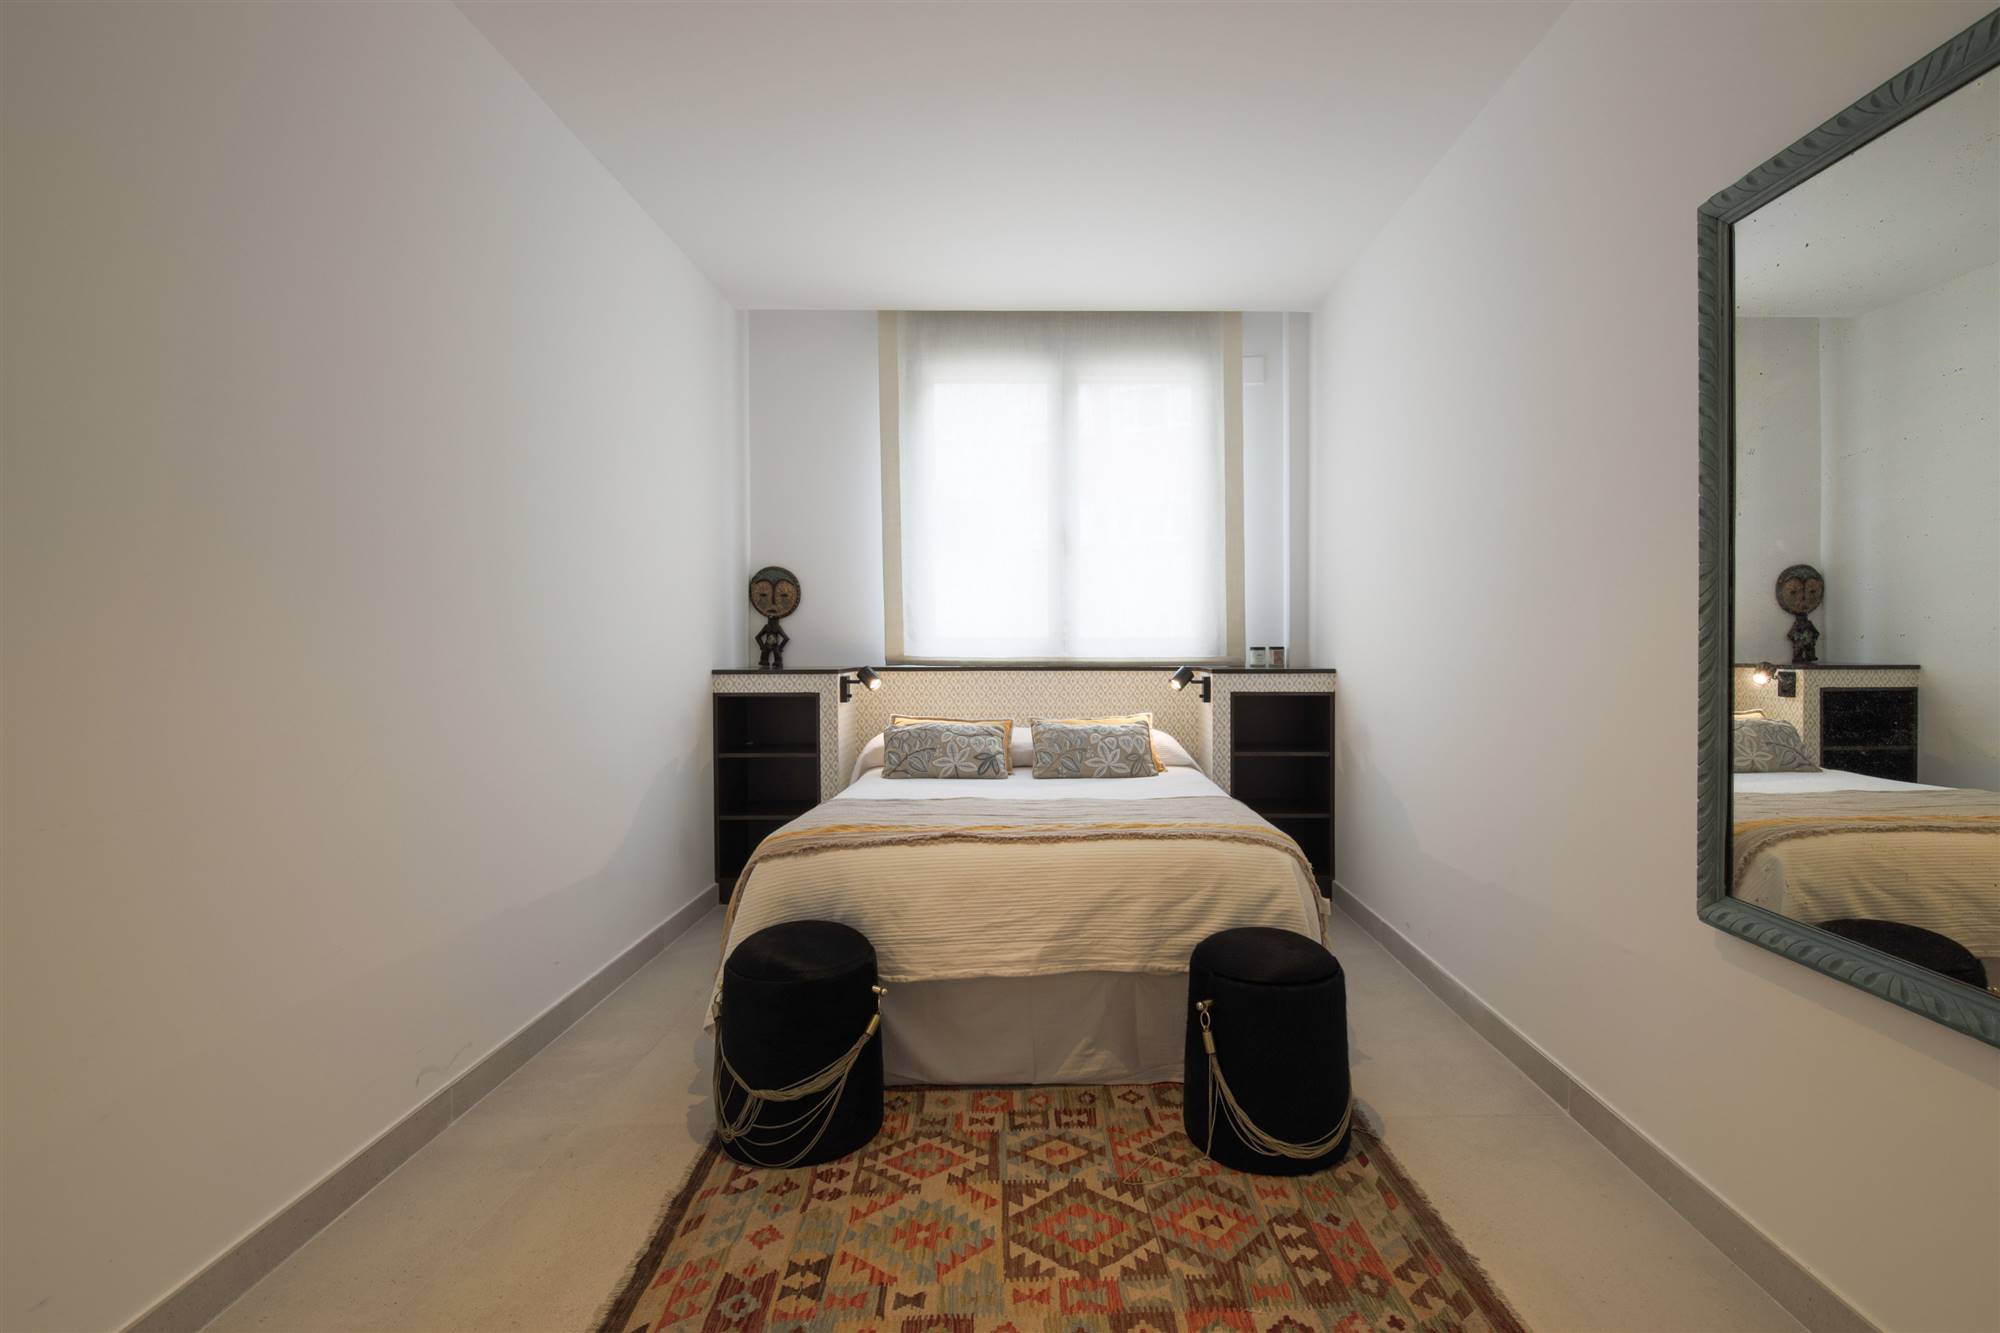 Habitación suite de invitados de una vivienda unifamiliar en la calle Arturo Soria de Madrid, un proyecto del estudio de interiorismo WINK GROUP.